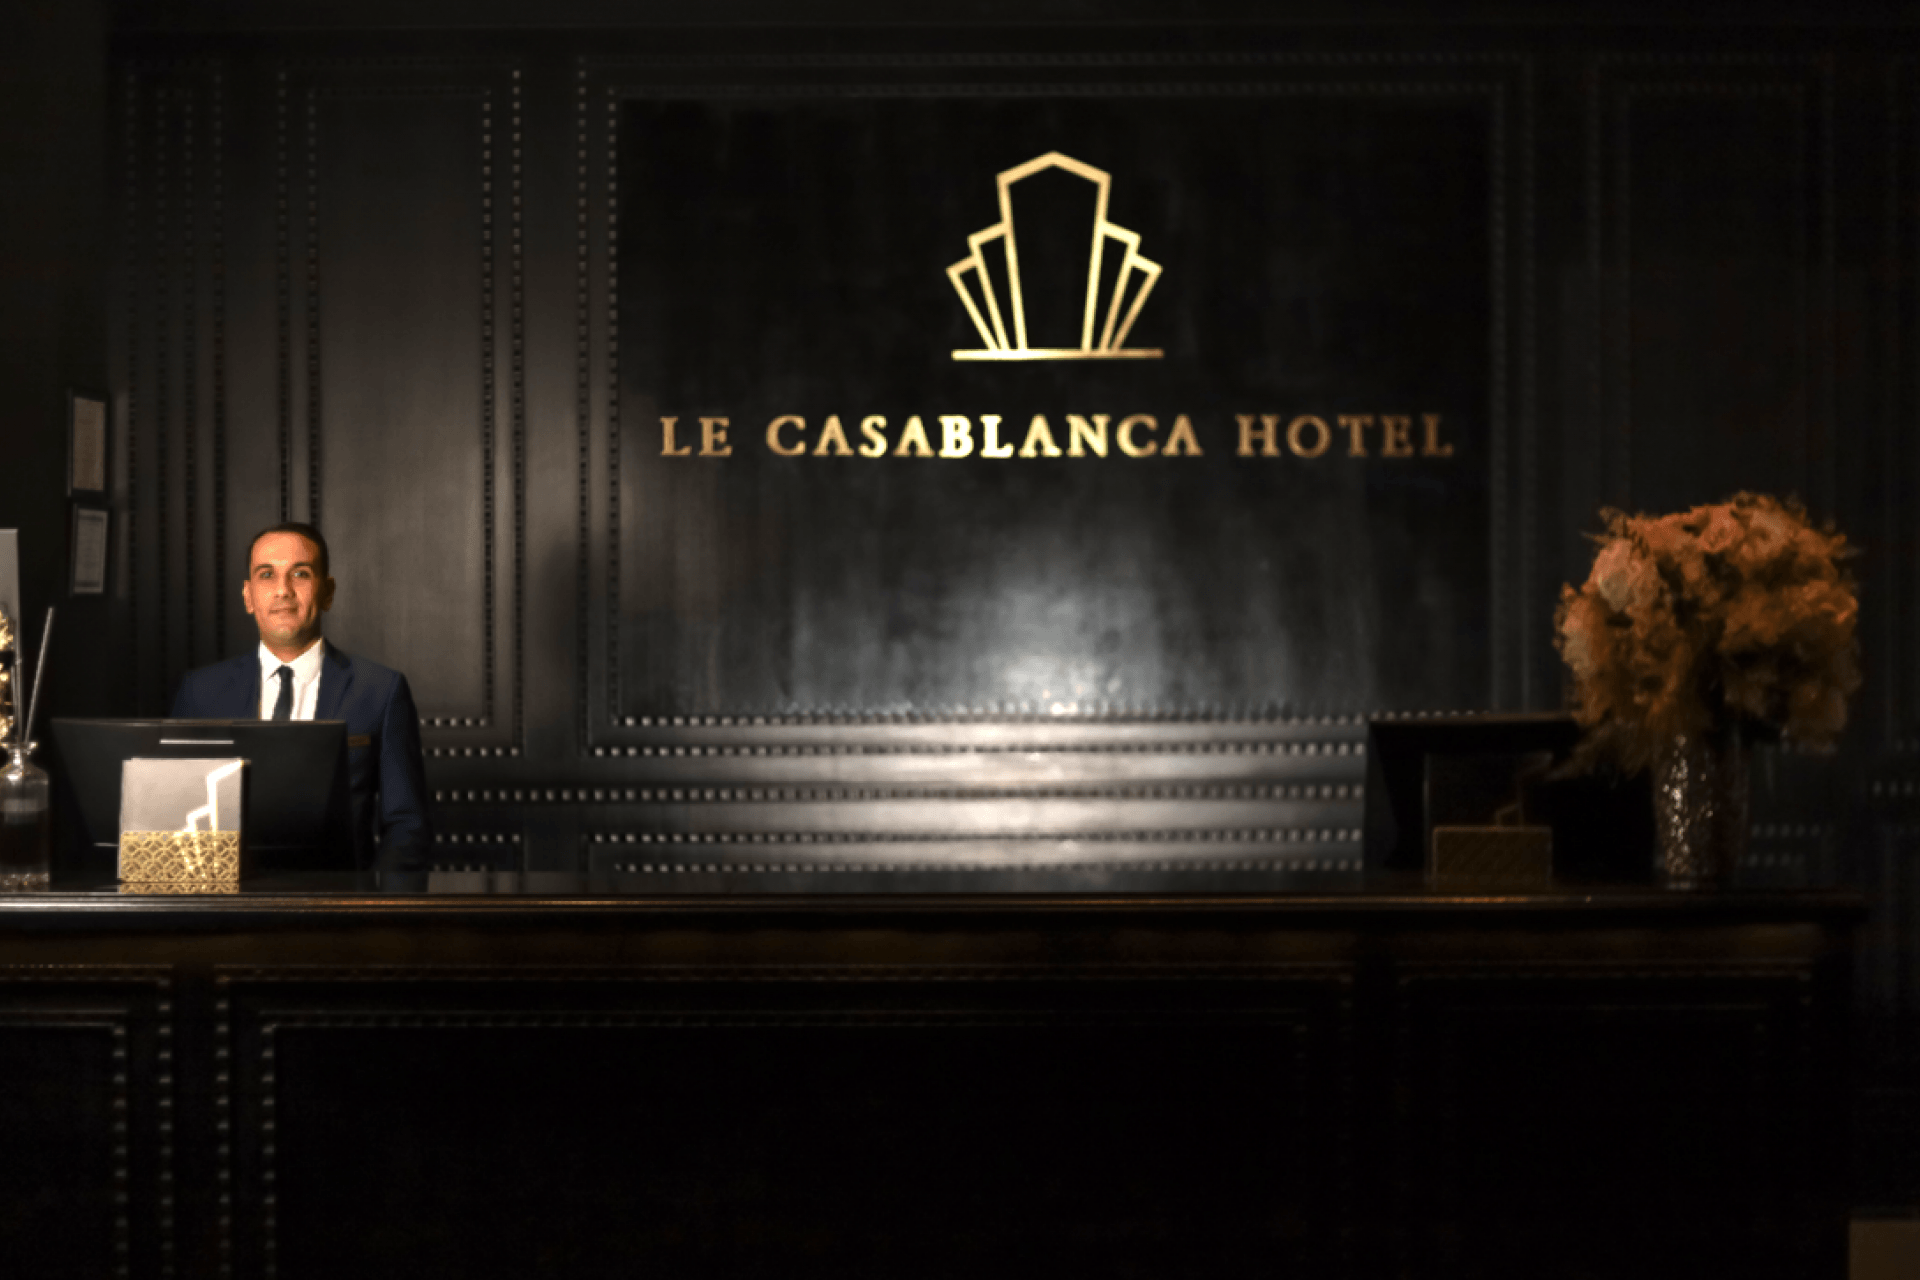 Le Casablanca Hôtel